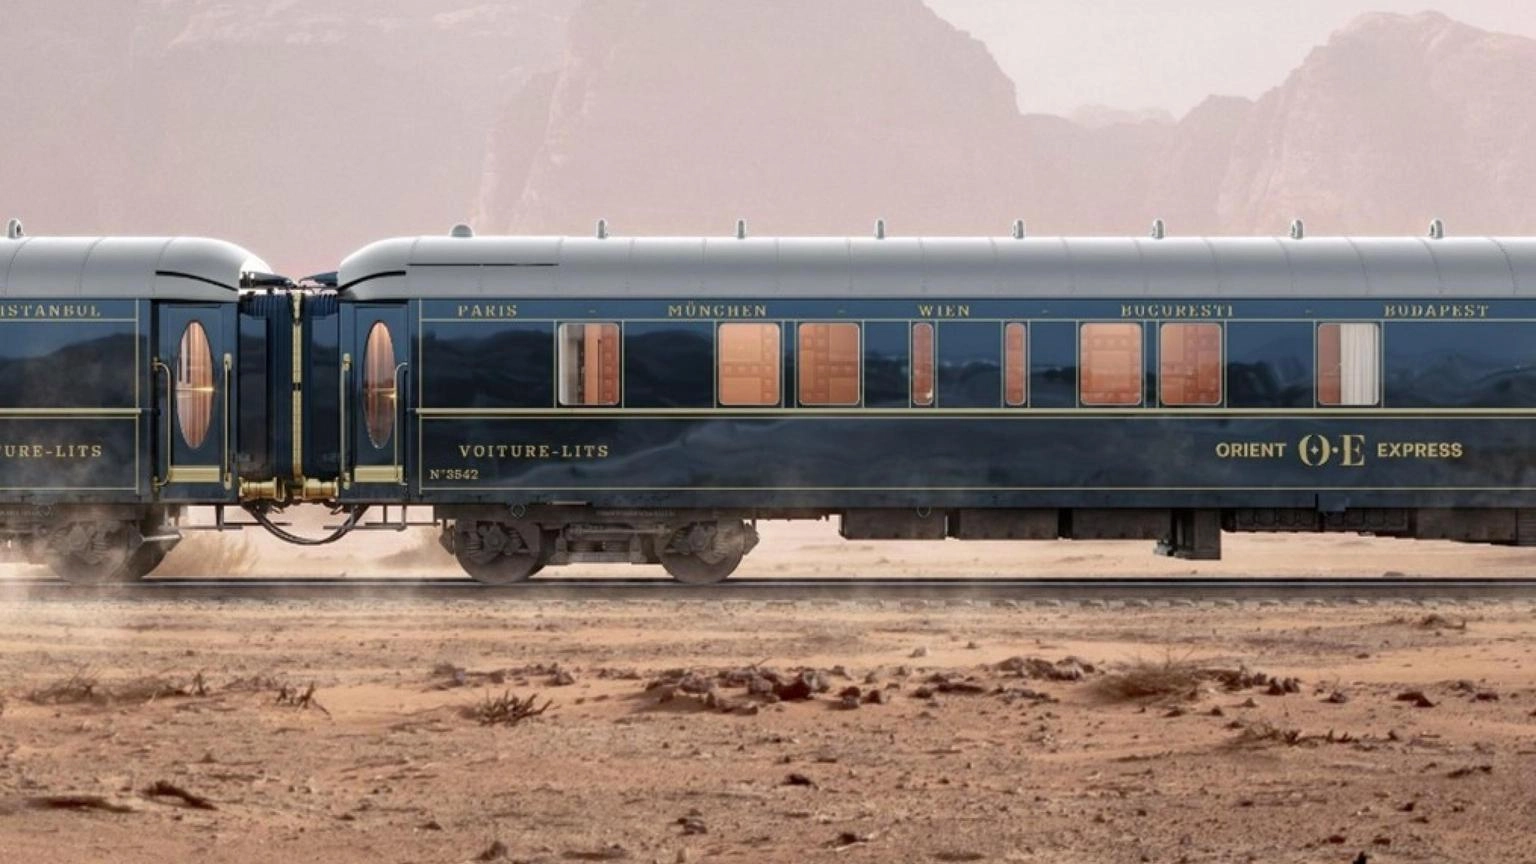 'Accordo Lvmh-Accor su Orient Express importante per Italia'